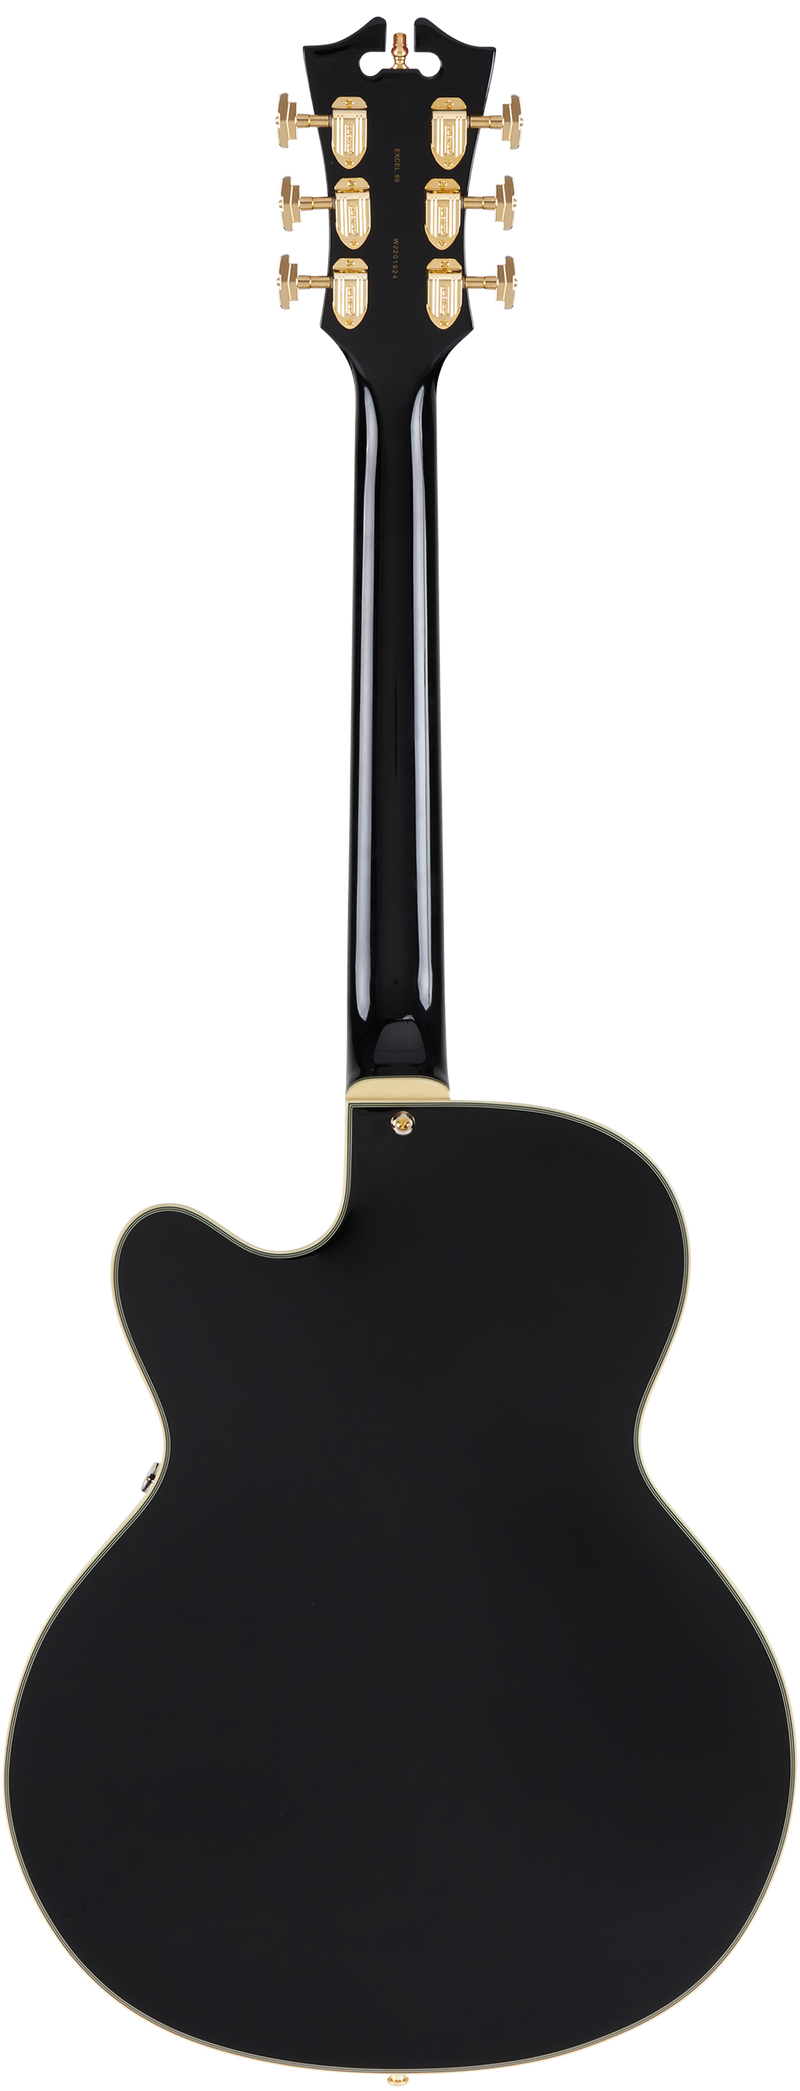 D'Angelico DAE59SBK2GT Guitare électrique à corps creux (noir massif)